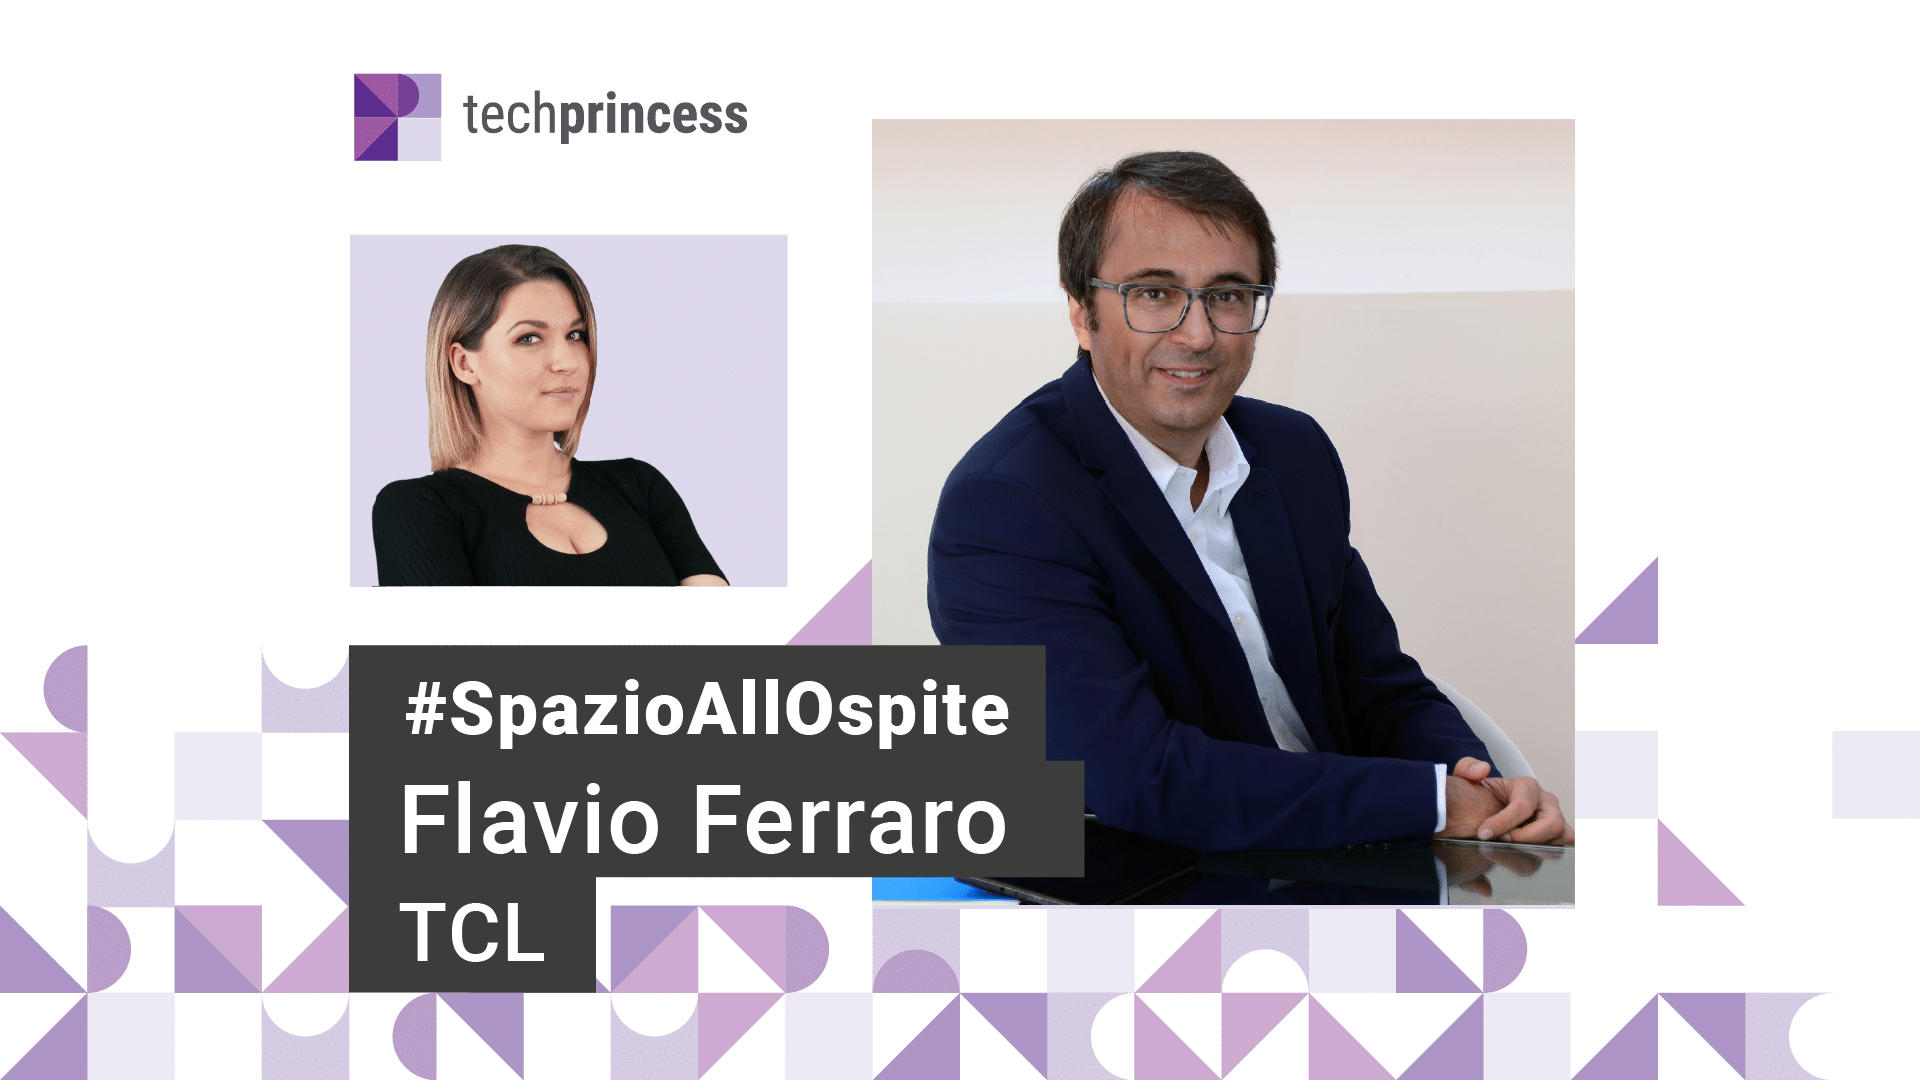 Flavio Ferraro, TCL: “Tutto quello che dovete sapere su TCL” | Intervista in live #SpazioAllospite thumbnail